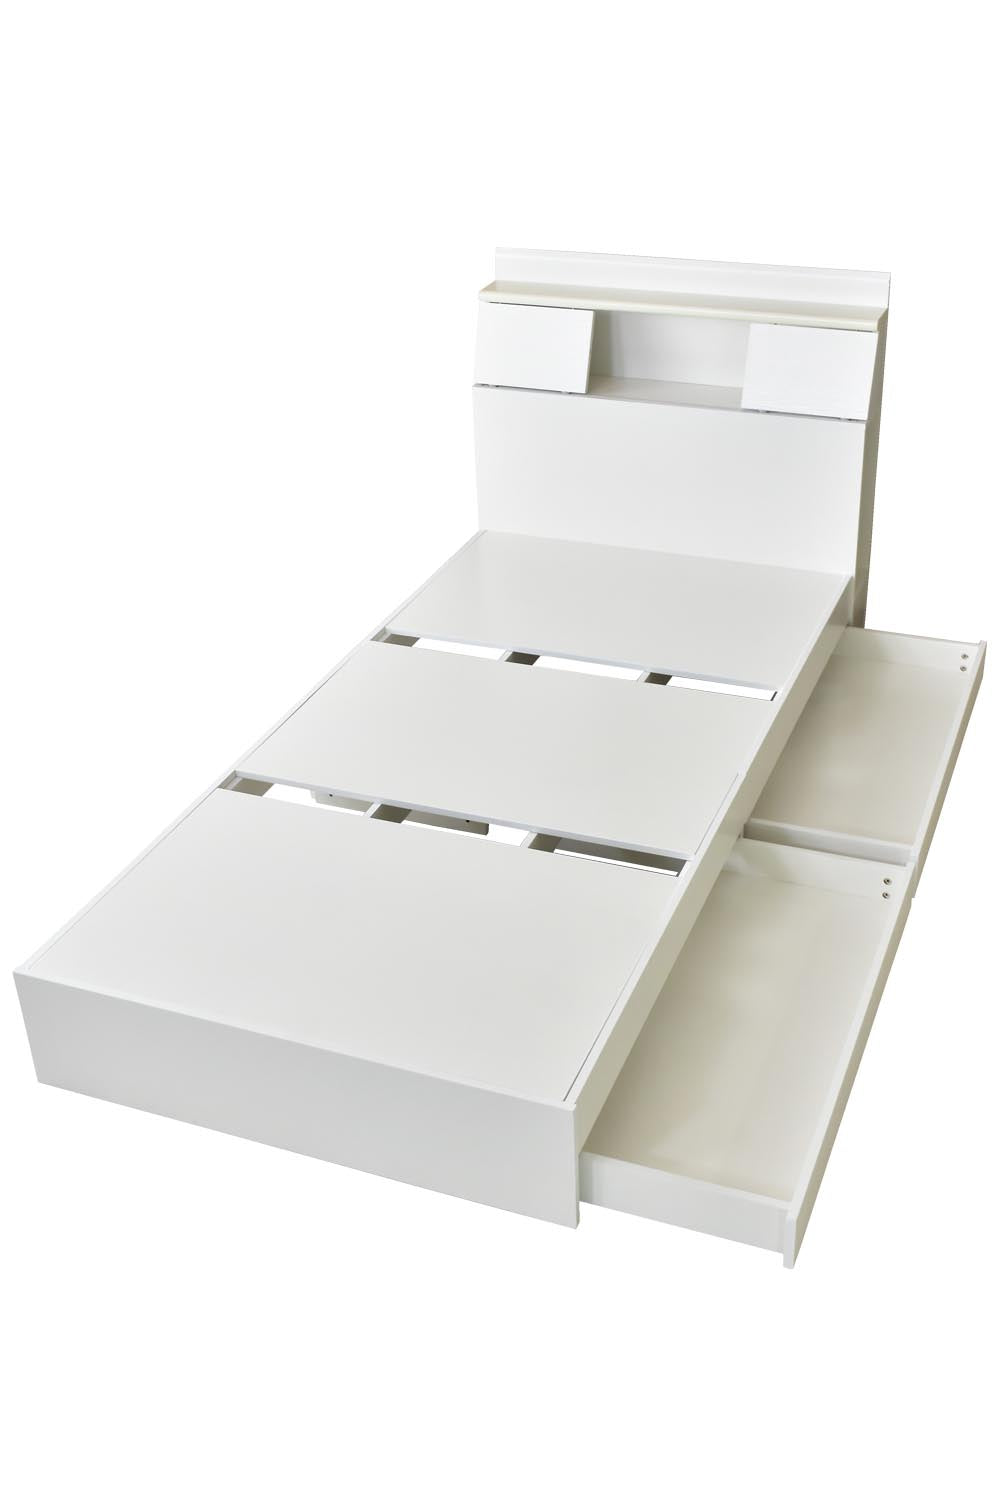 ベッド シングル フレーム 収納付き スライド扉 コンセント 組立式 グラード